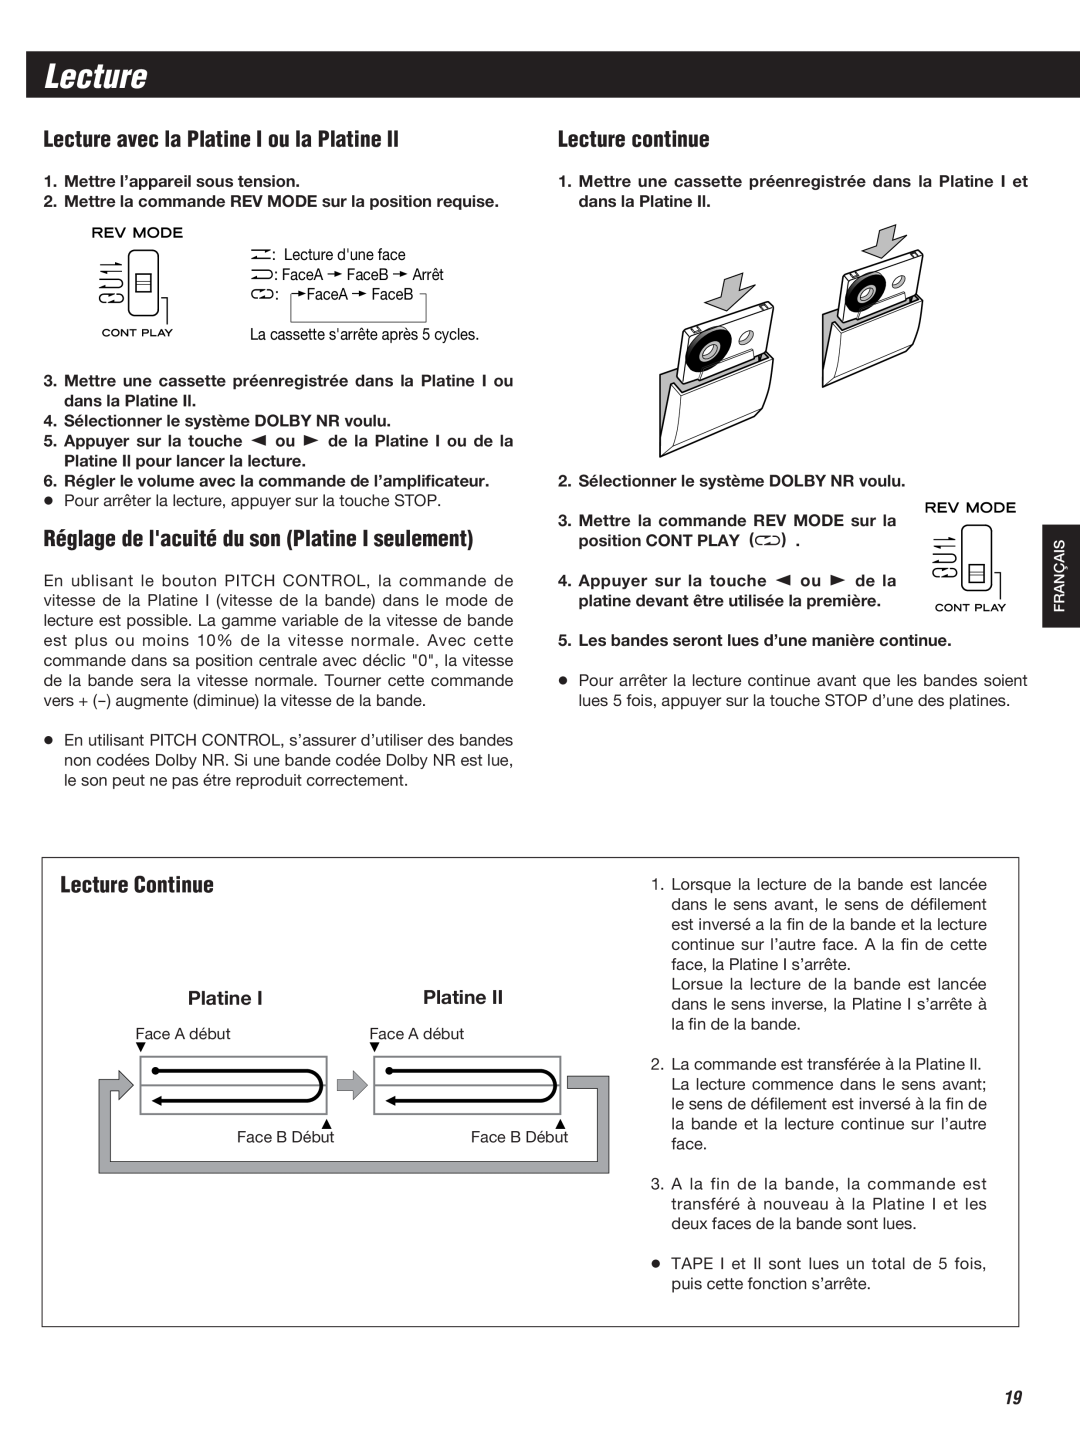 Teac W-860R owner manual Lecture avec la Platine I ou la Platine Il, Réglage de lacuité du son Platine I seulement 